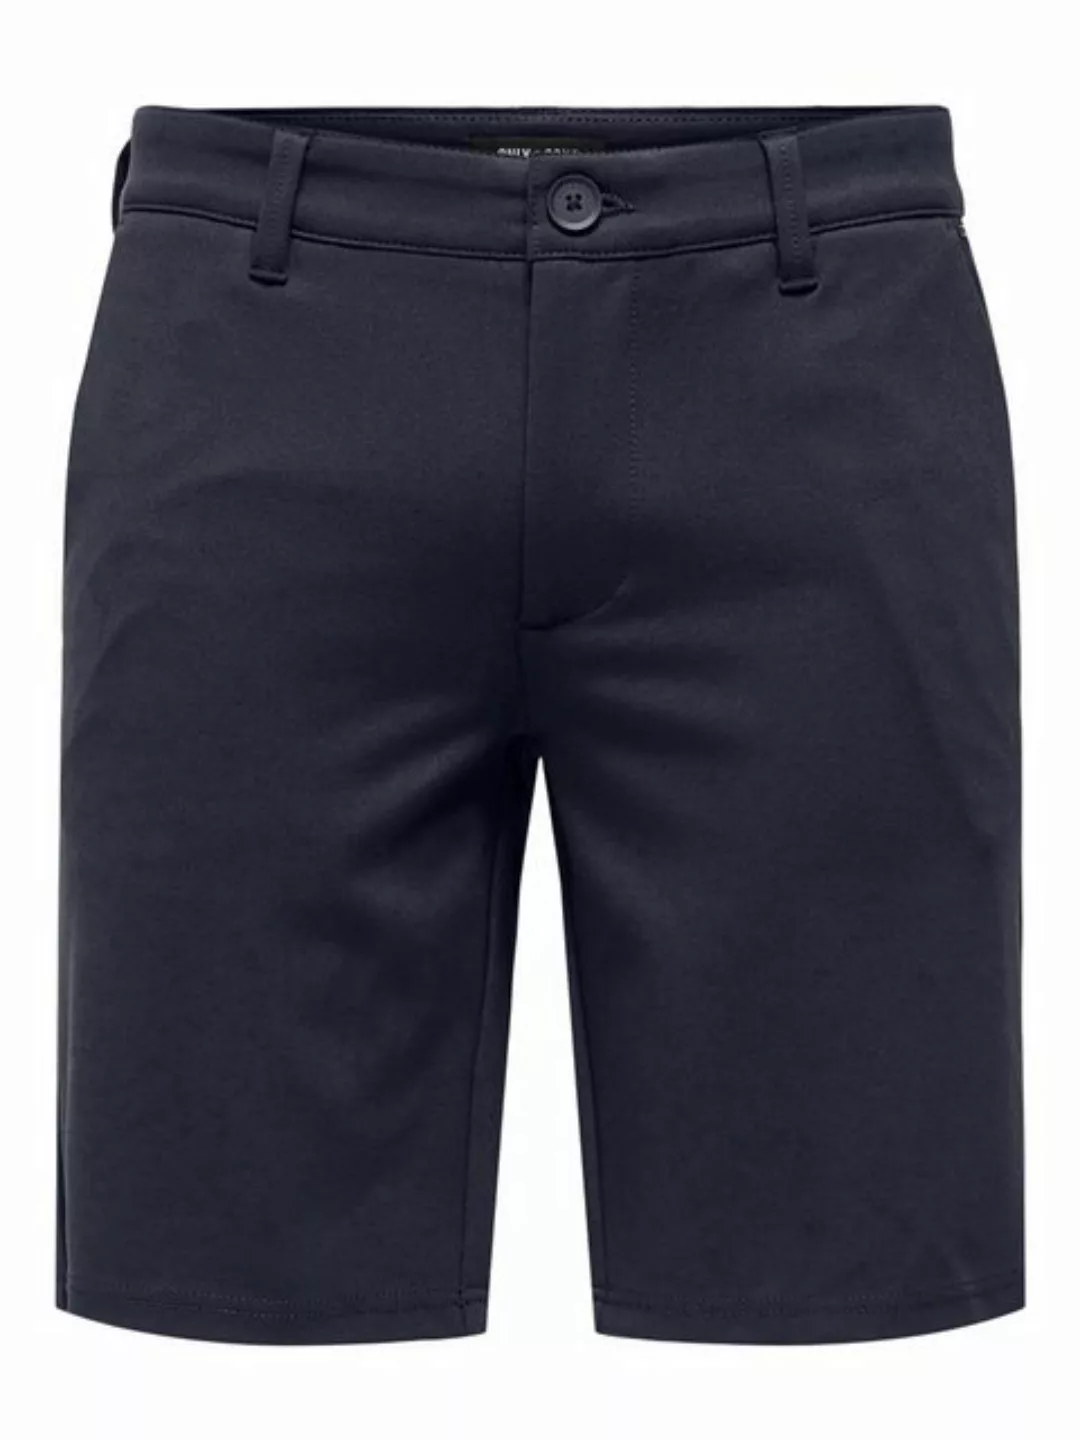 ONLY & SONS Chinoshorts Shorts Bermuda Pants Sommer Hose 7413 in Blau-2 günstig online kaufen